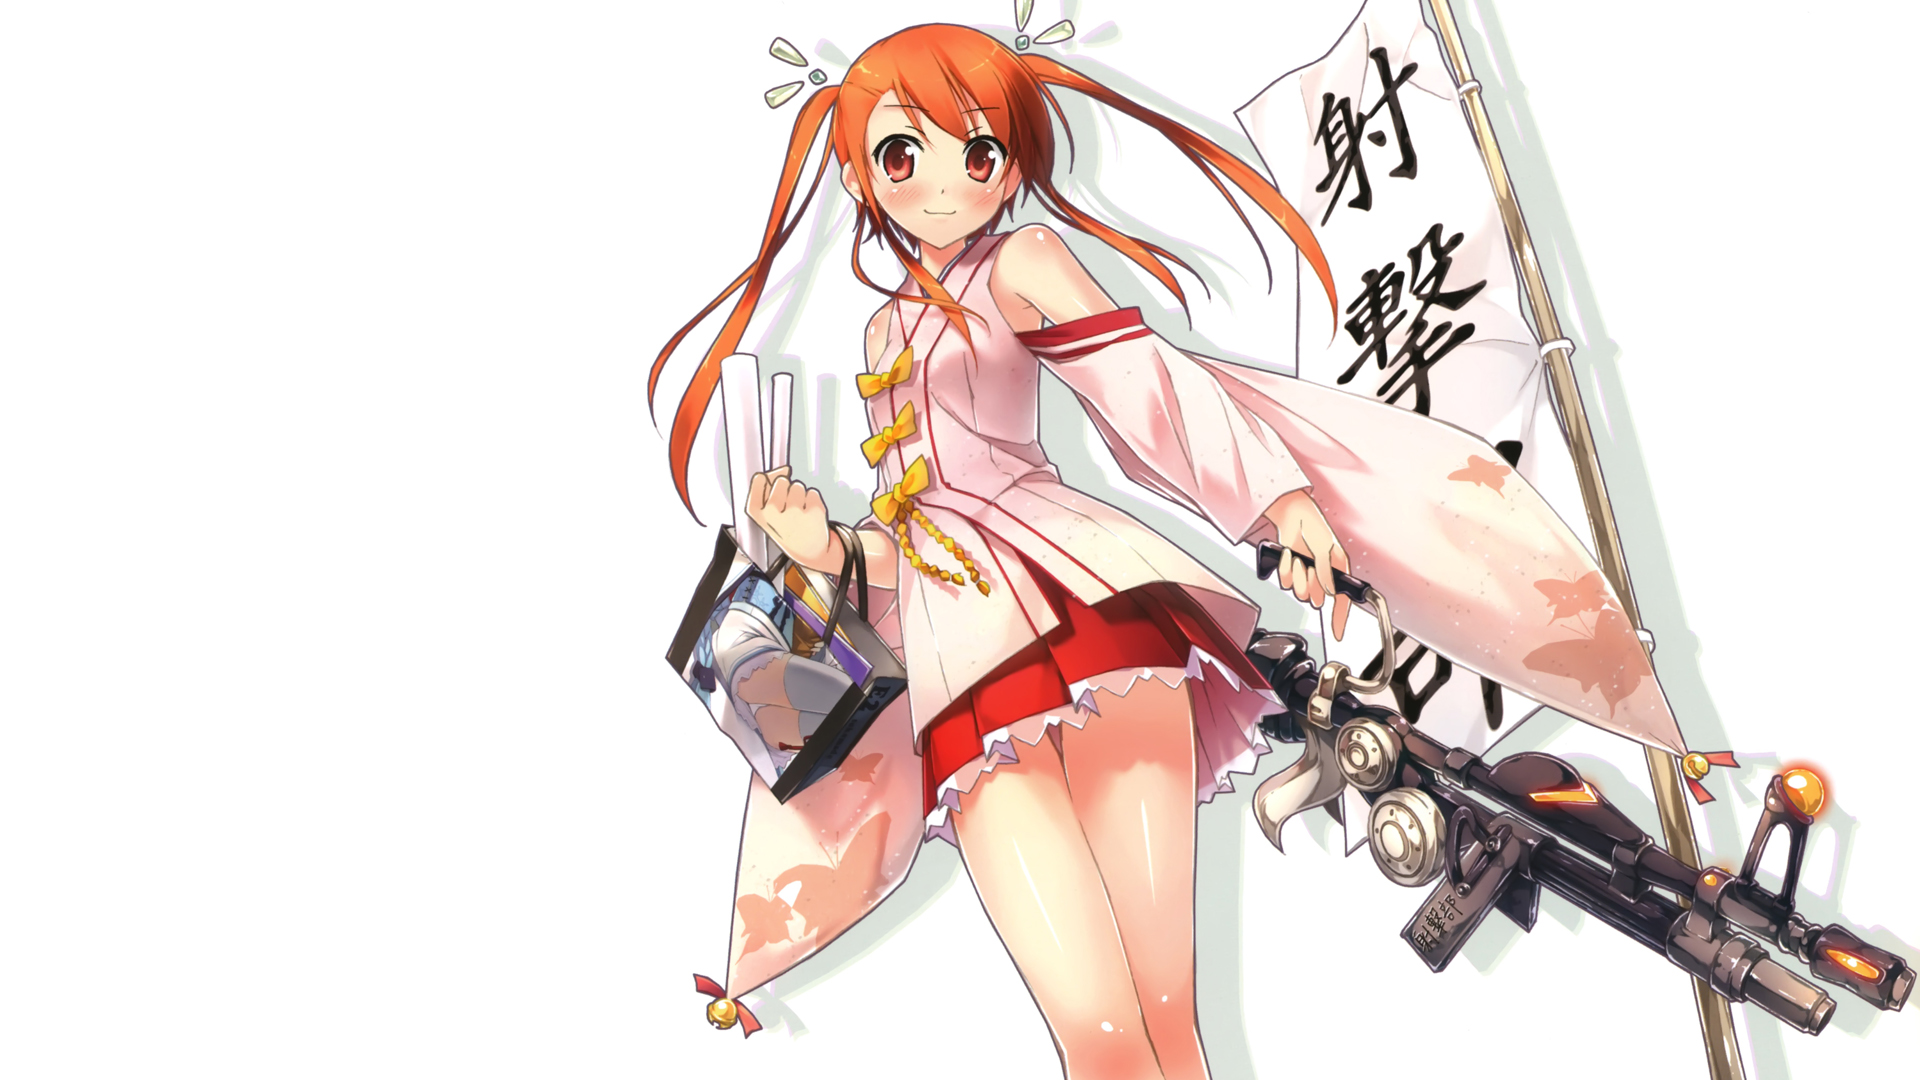 пистолеты, платье, оружие, хвостики, оранжевые волосы, японская одежда, простой фон, аниме девушки, Kantoku ( художник ), белый фон, оригинальные персонажи - обои на рабочий стол